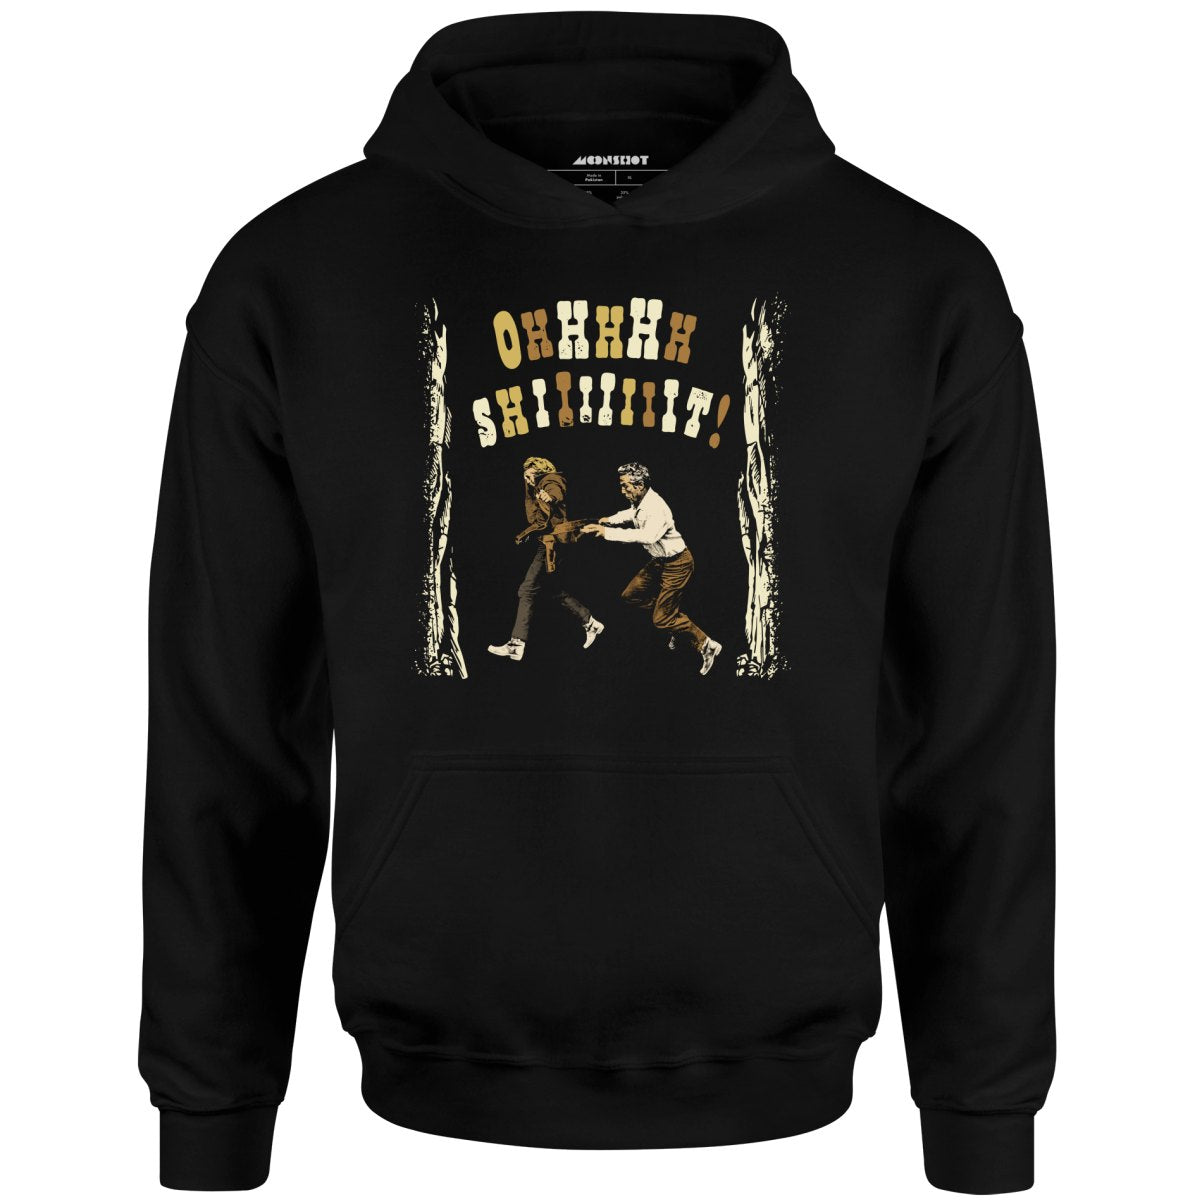 Ohhhhh Shiiiiiiit - Butch Cassidy & The Sundance Kid - Unisex Hoodie